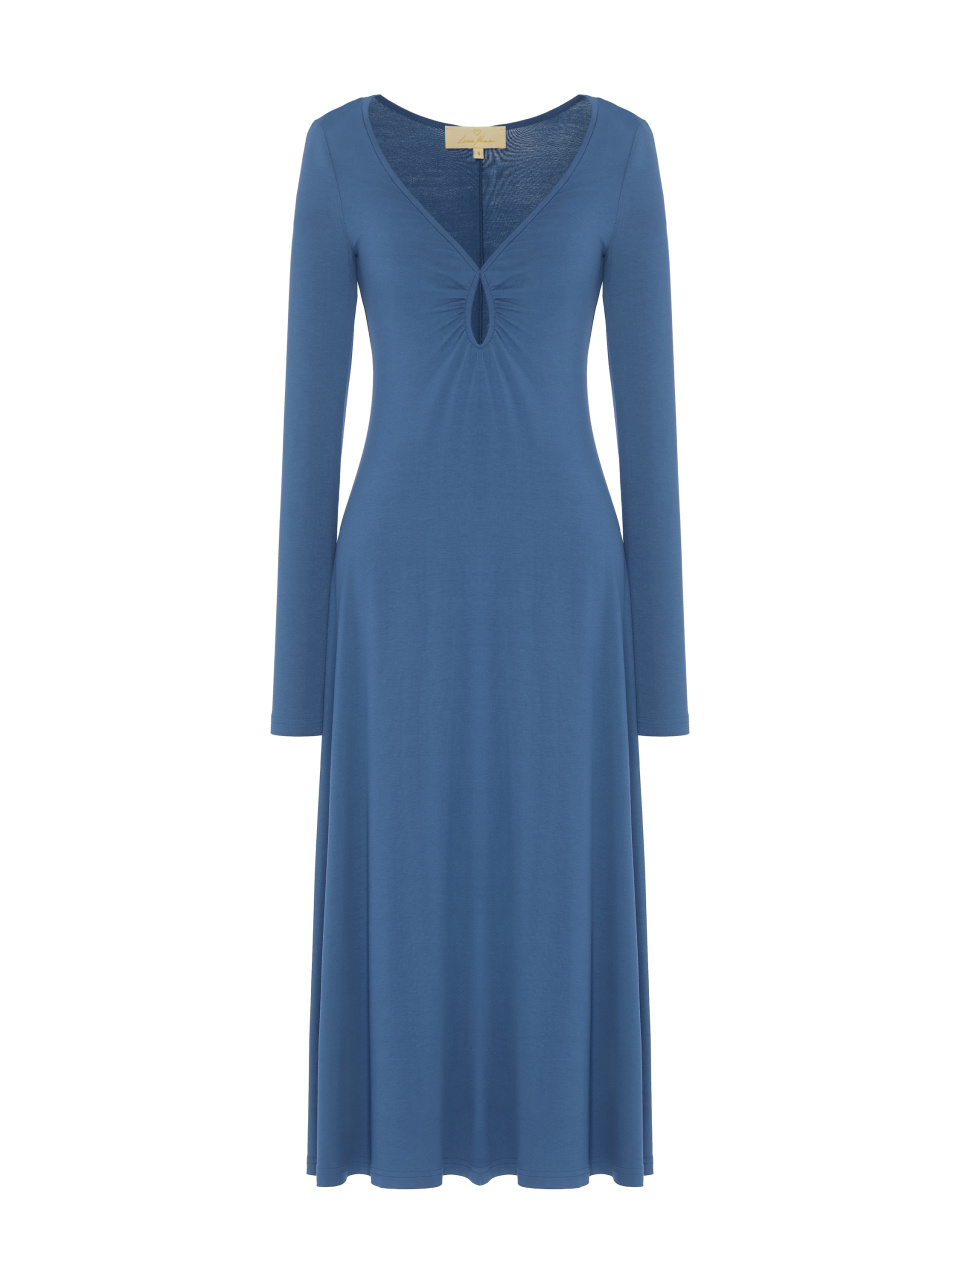 Синее трикотажное платье с фигурным вырезом, 1